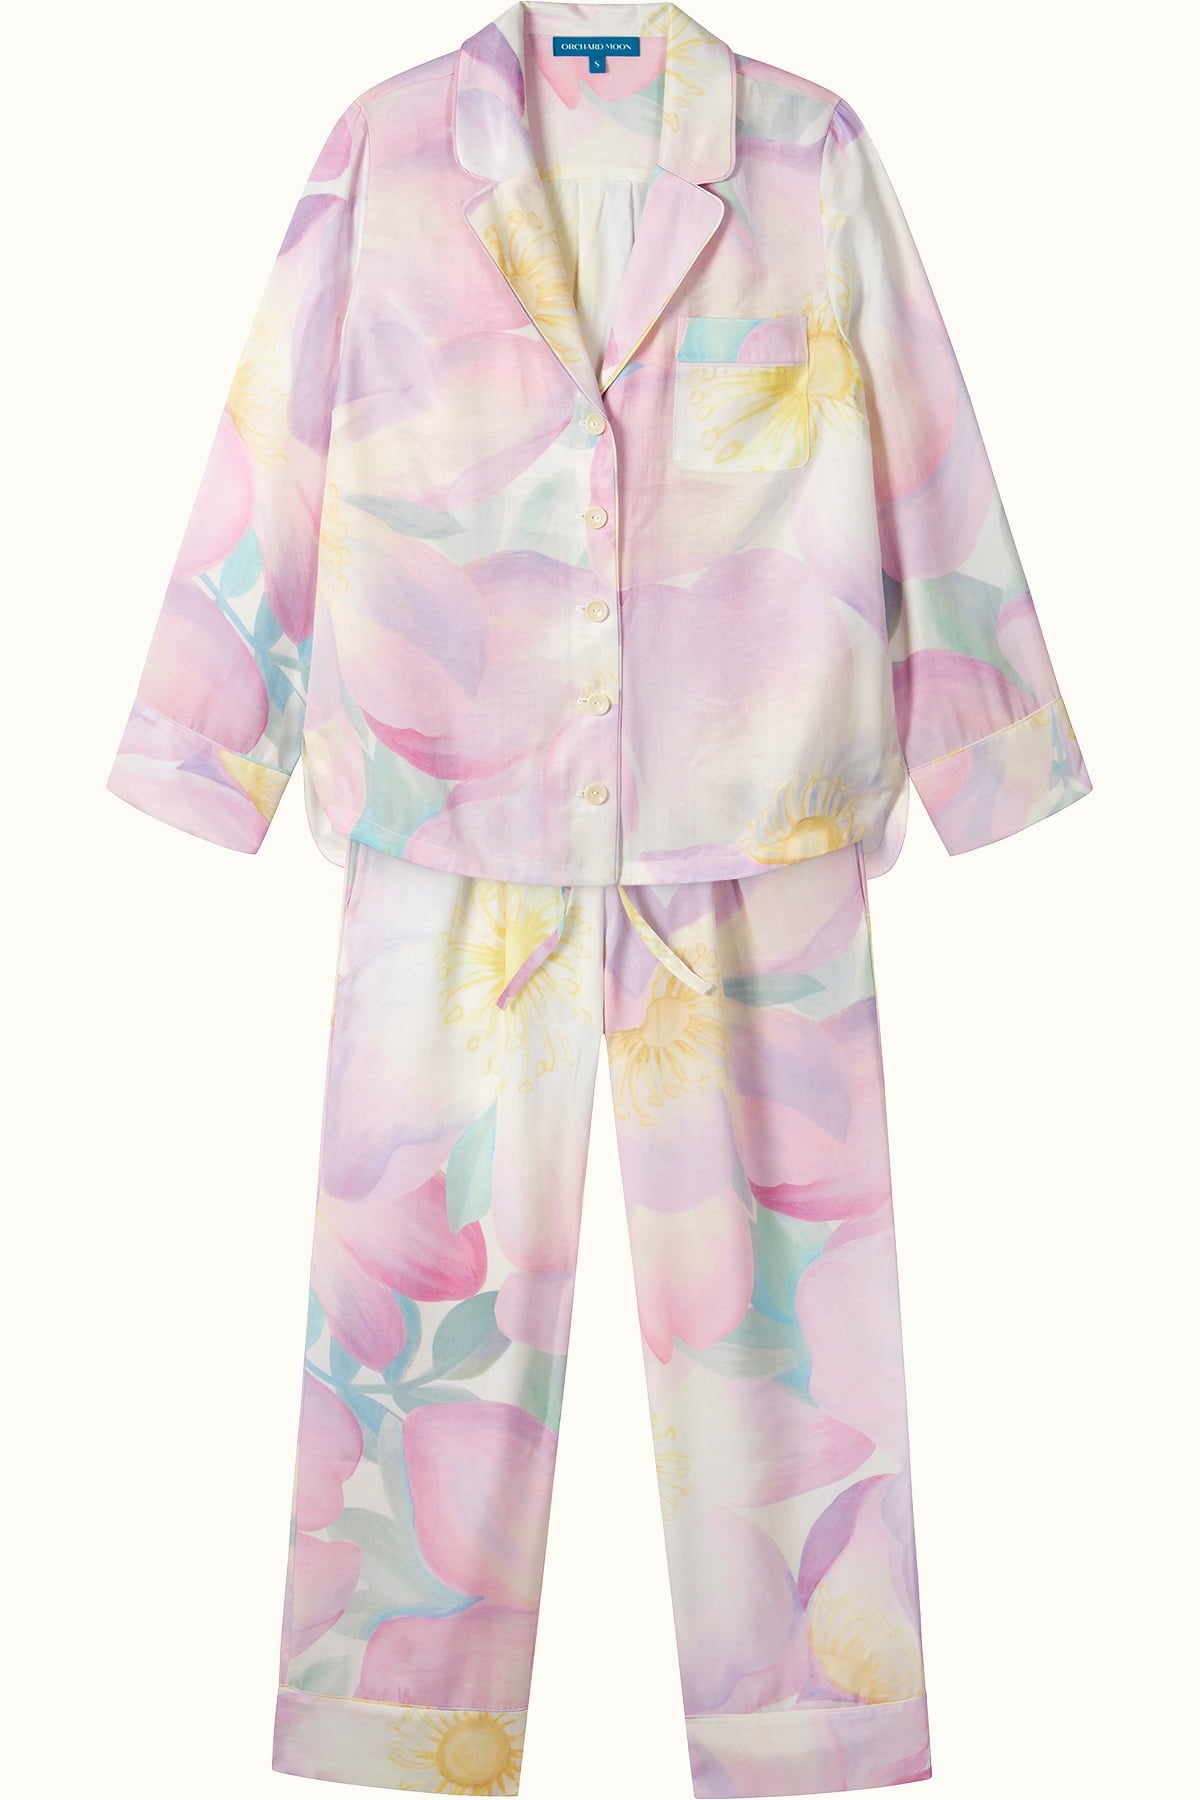 Wild Rose Luxury Pyjamas - Flatlay- Orchard Moon - Sustainable Luxury Loungewear